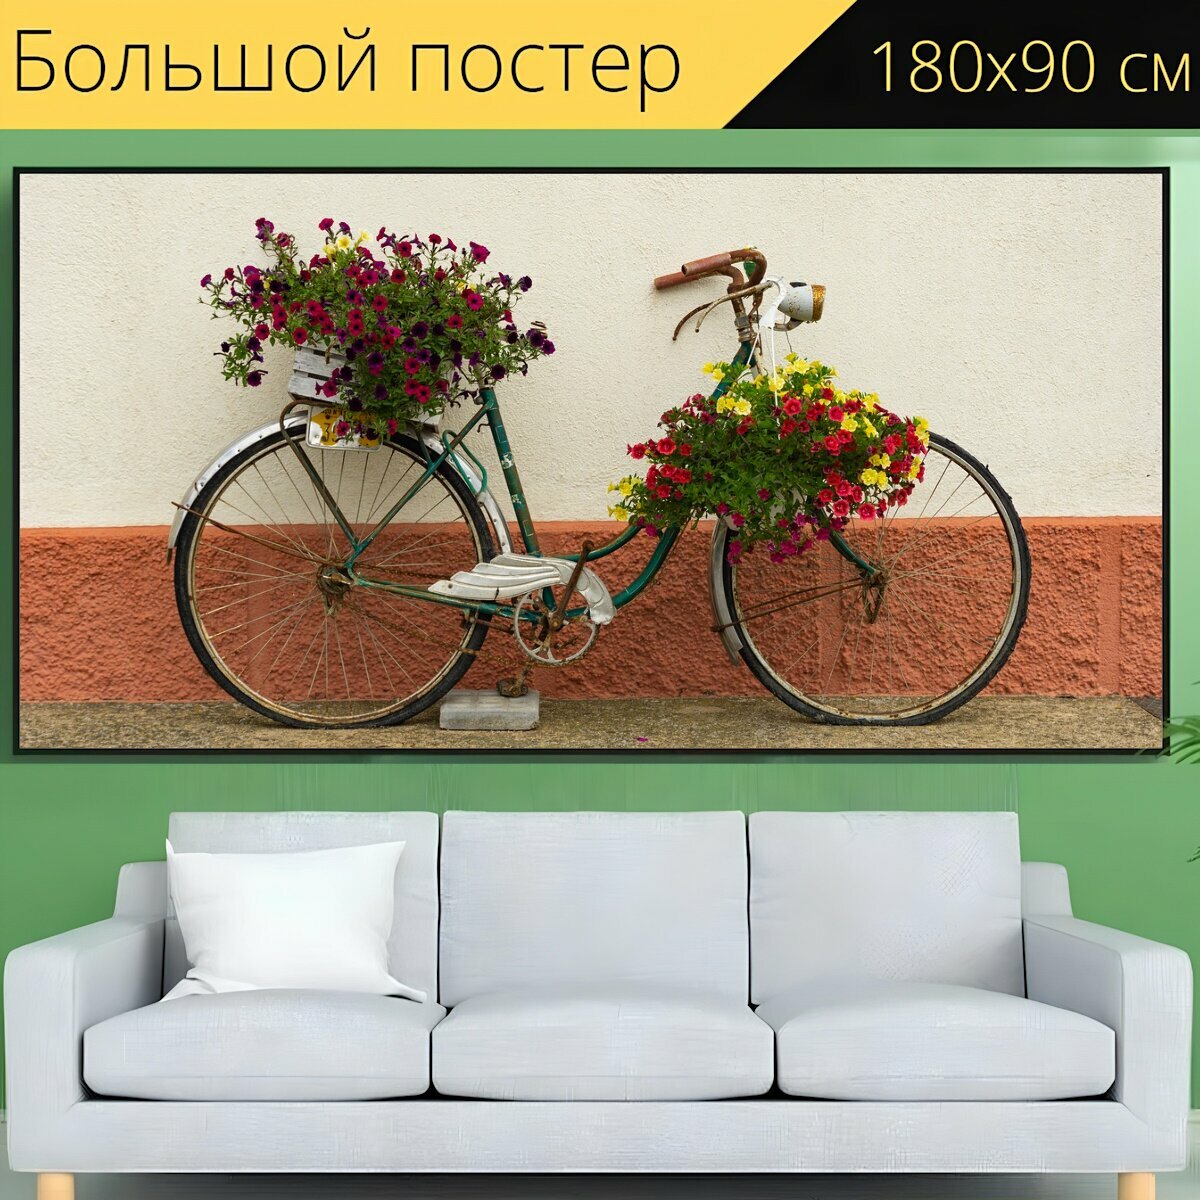 Большой постер "Велосипед, украшение, декоративный" 180 x 90 см. для интерьера